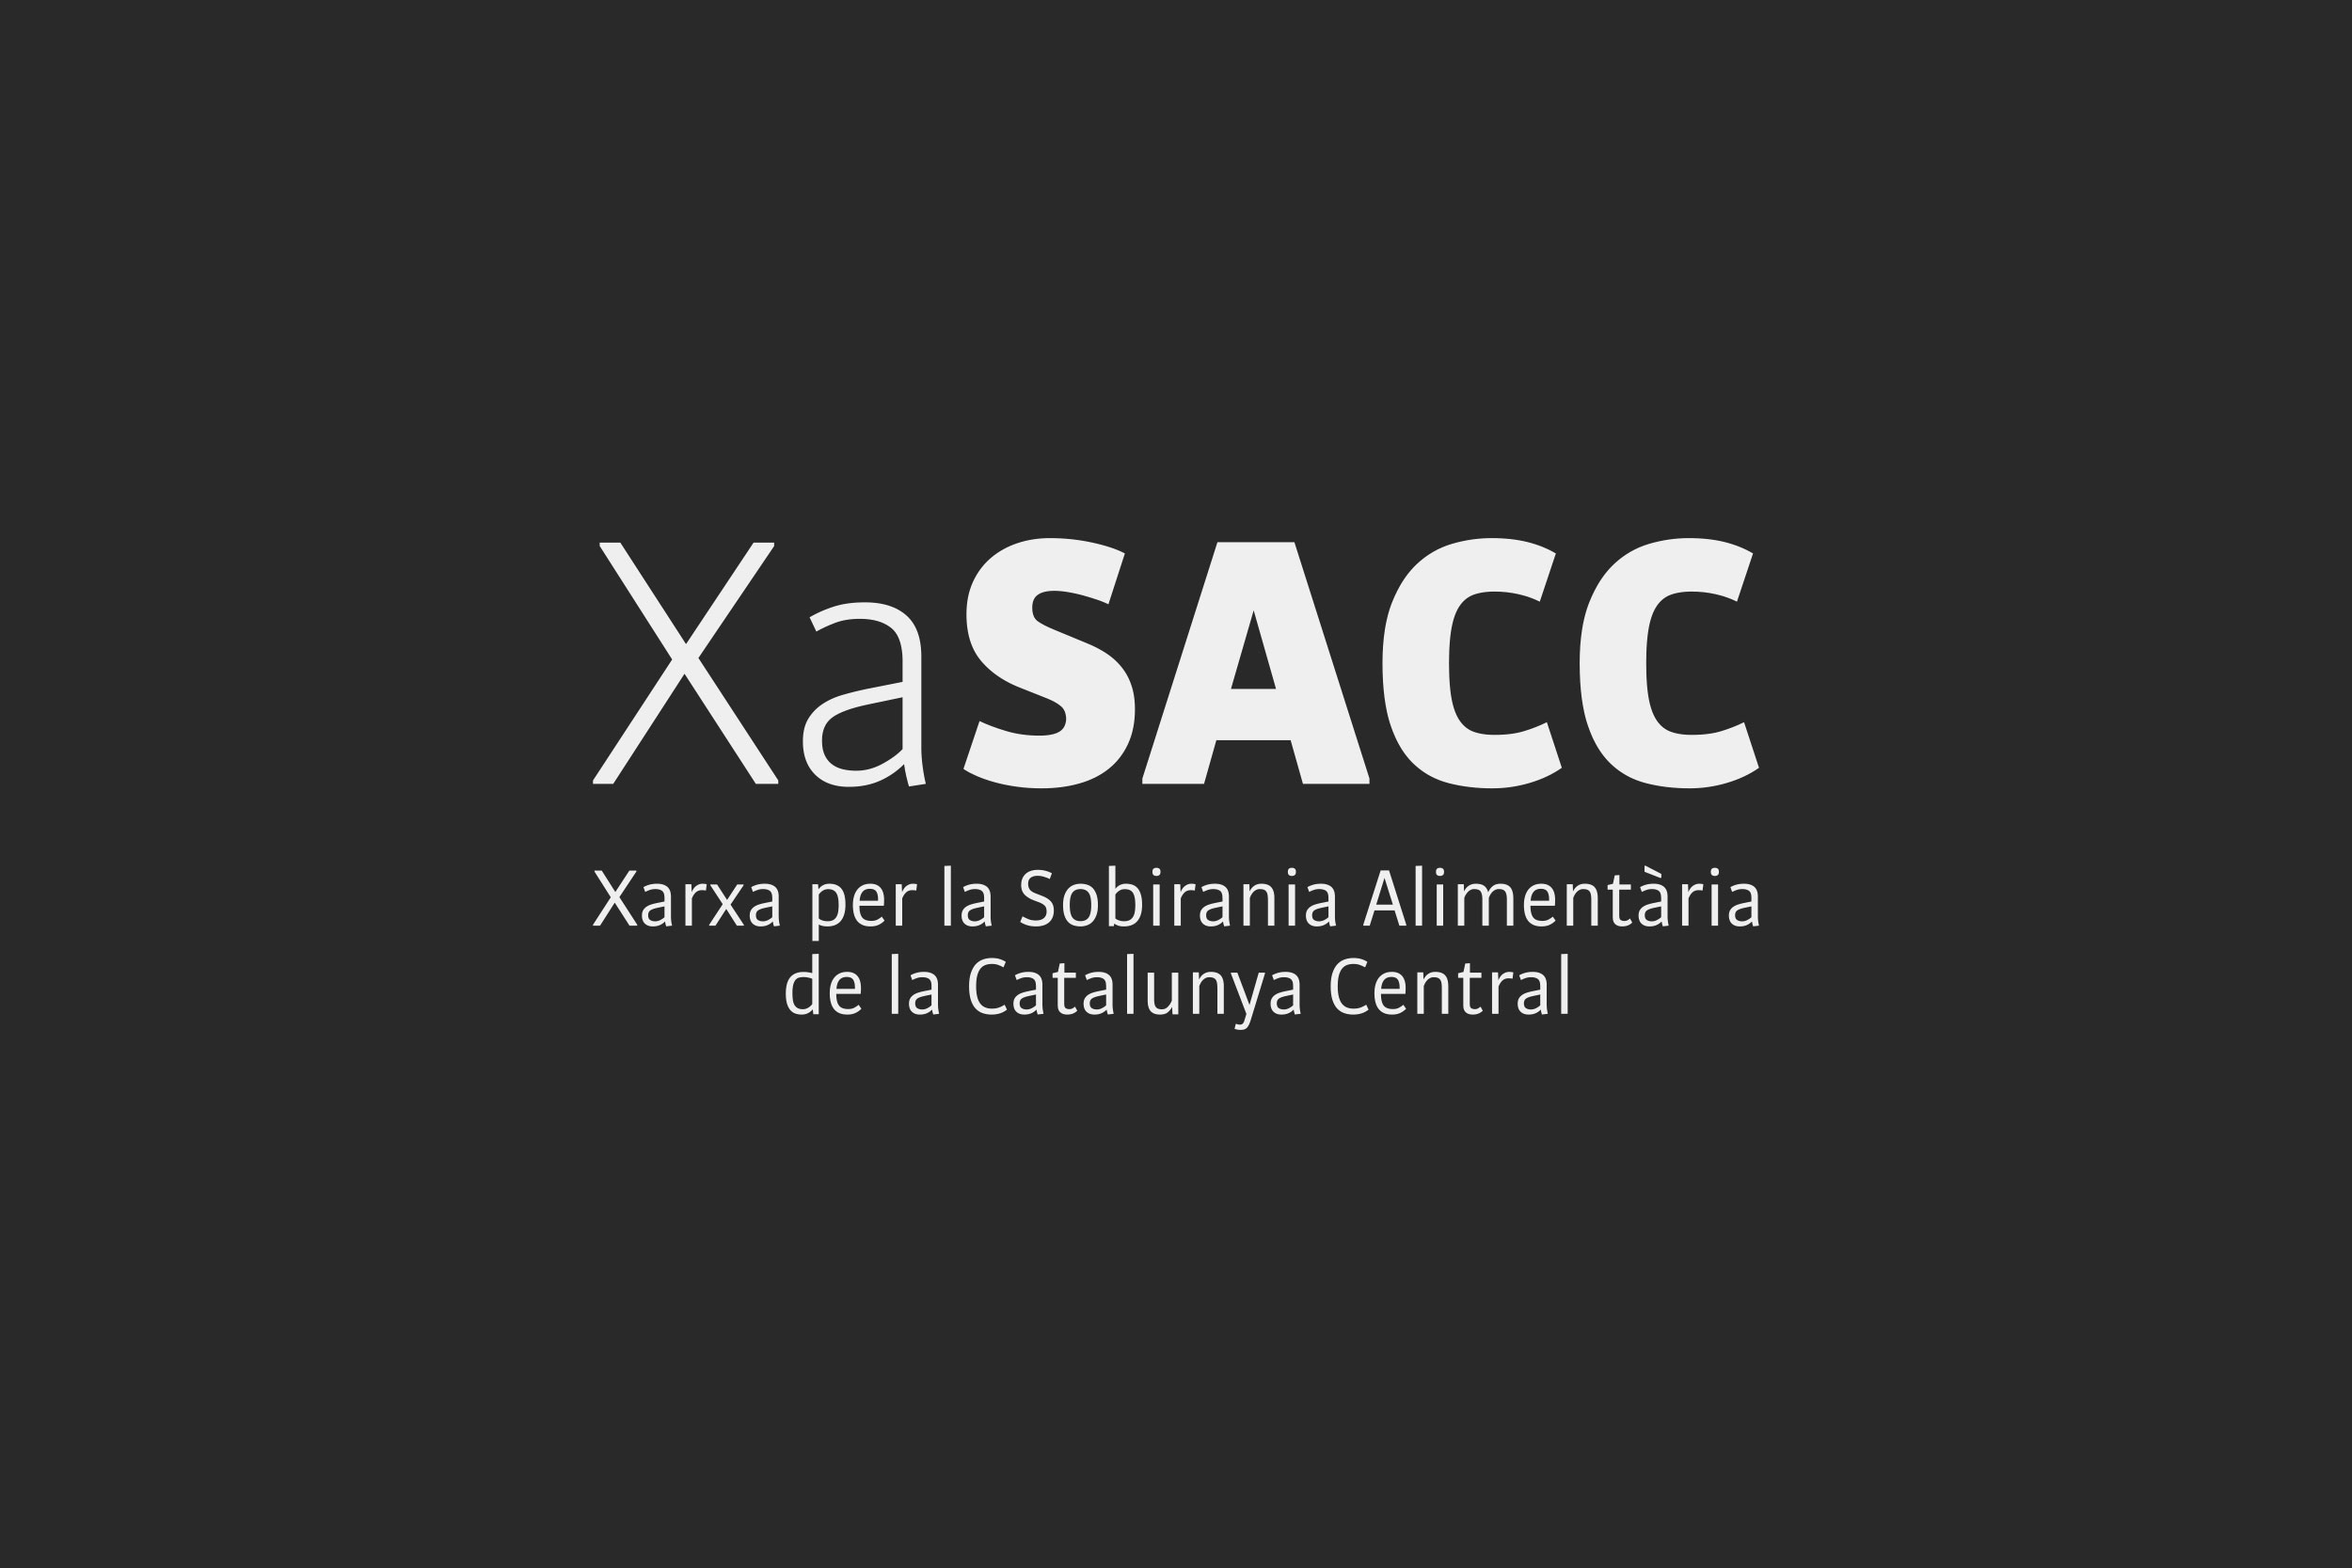 Porta-Disseny-Logos-XaSAAC-Xarxa-per-la-Sobirania-Alimentaria-de-la-Catalunya-Central-01